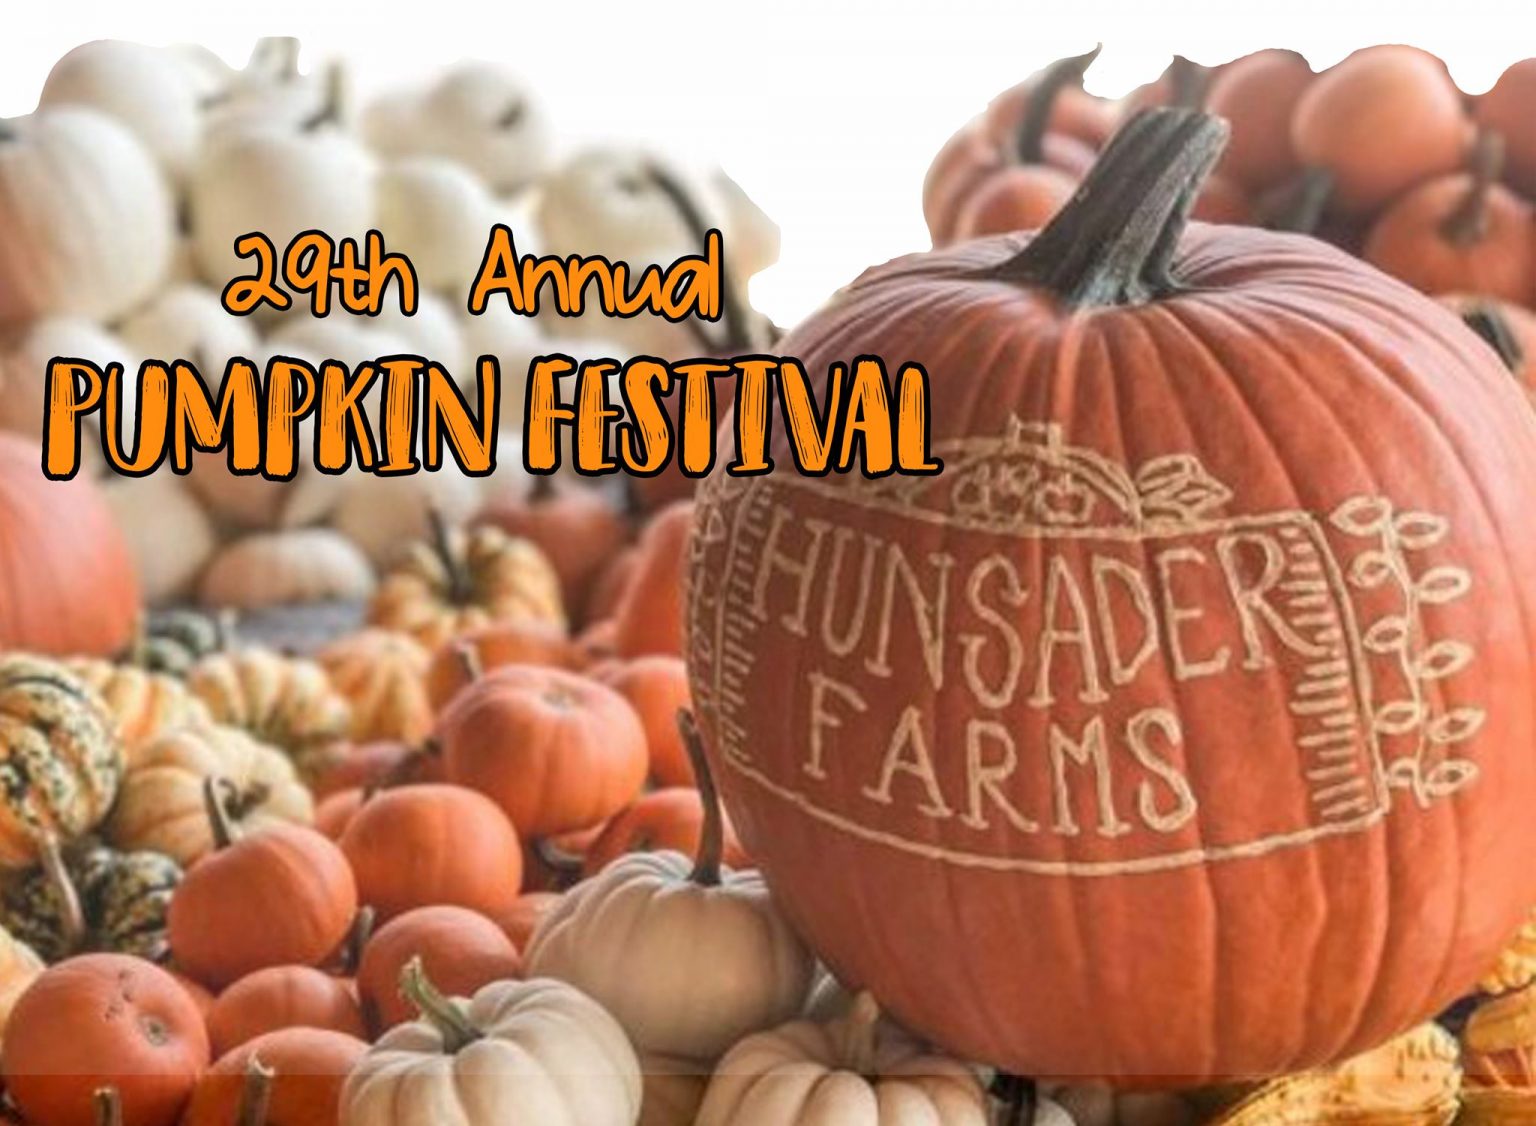 Hunsader Farms 29th Annual Pumpkin Festival